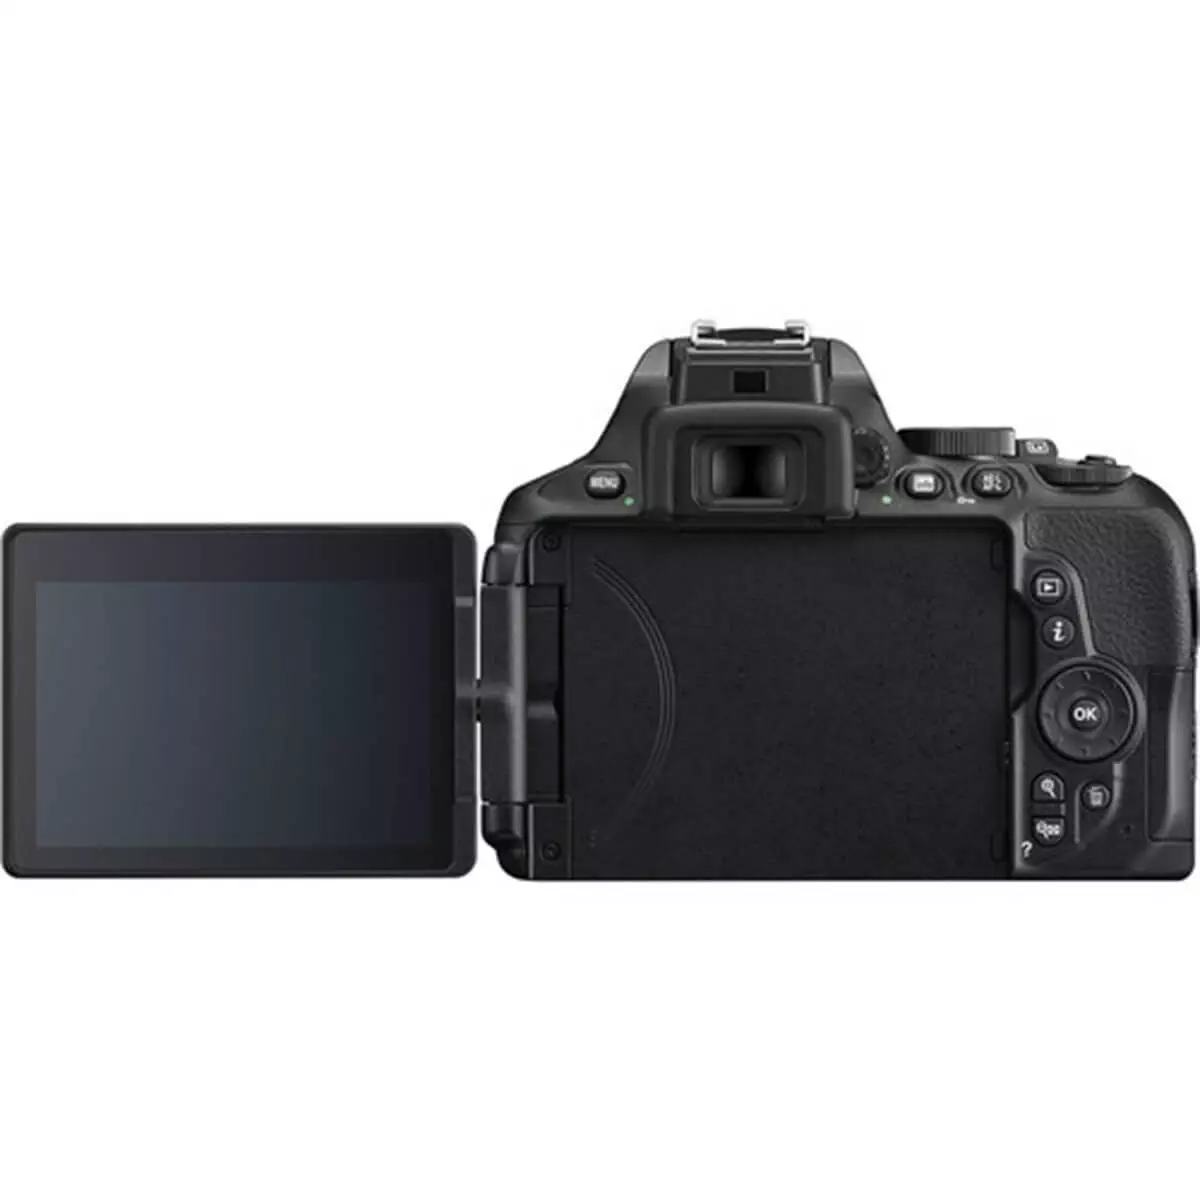 Nikon D5600 kit 10